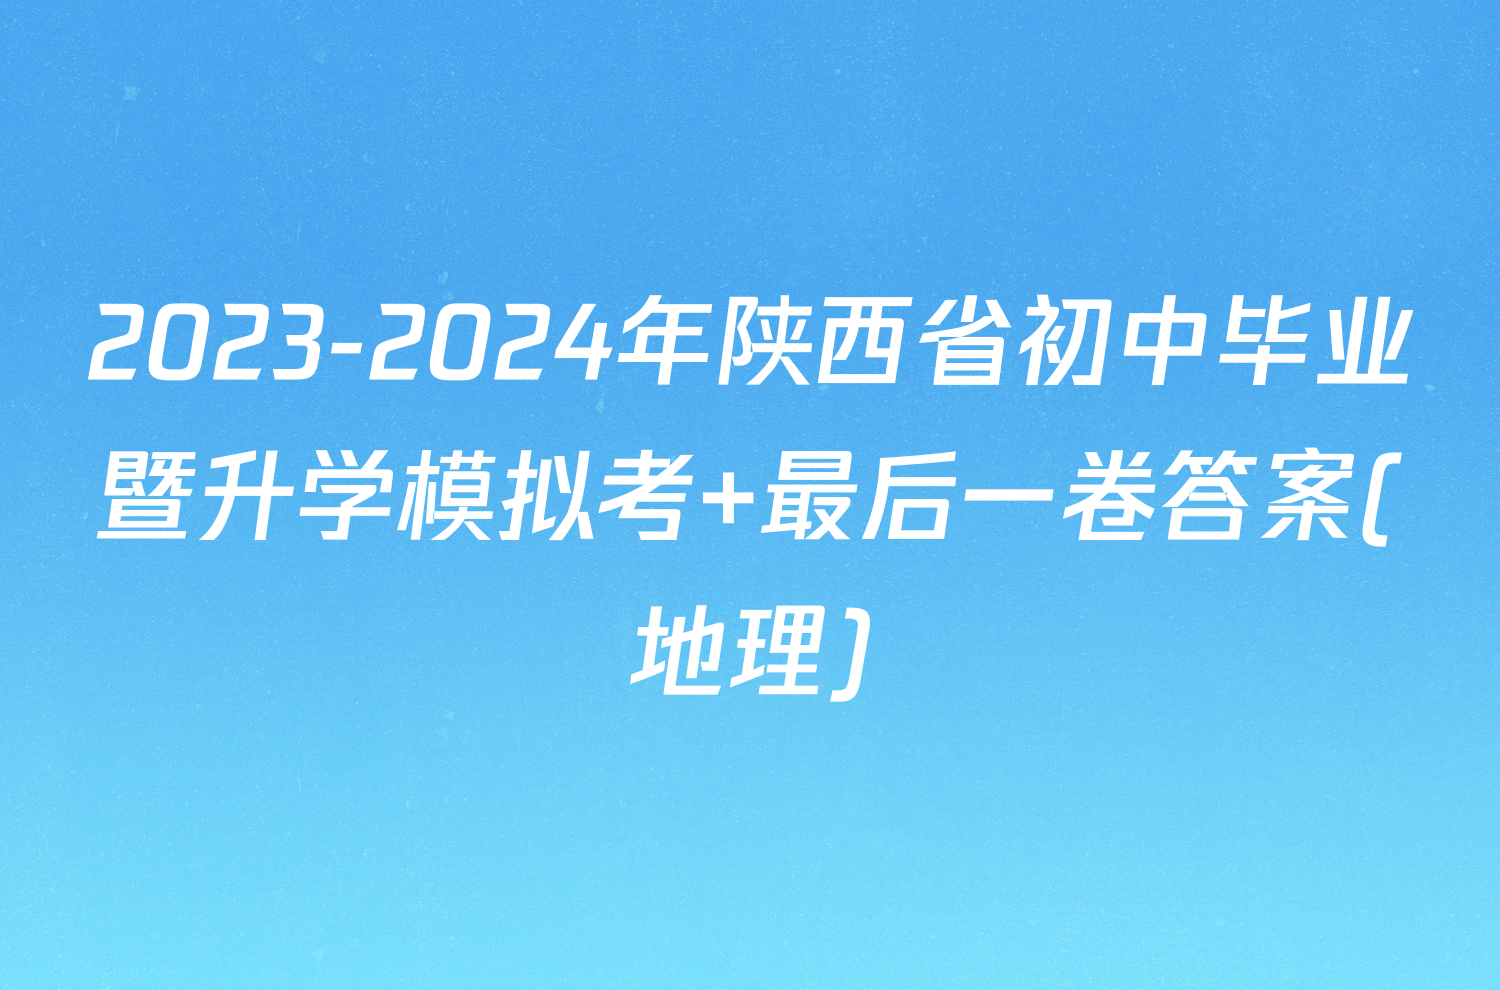 2023-2024年陕西省初中毕业暨升学模拟考 最后一卷答案(地理)